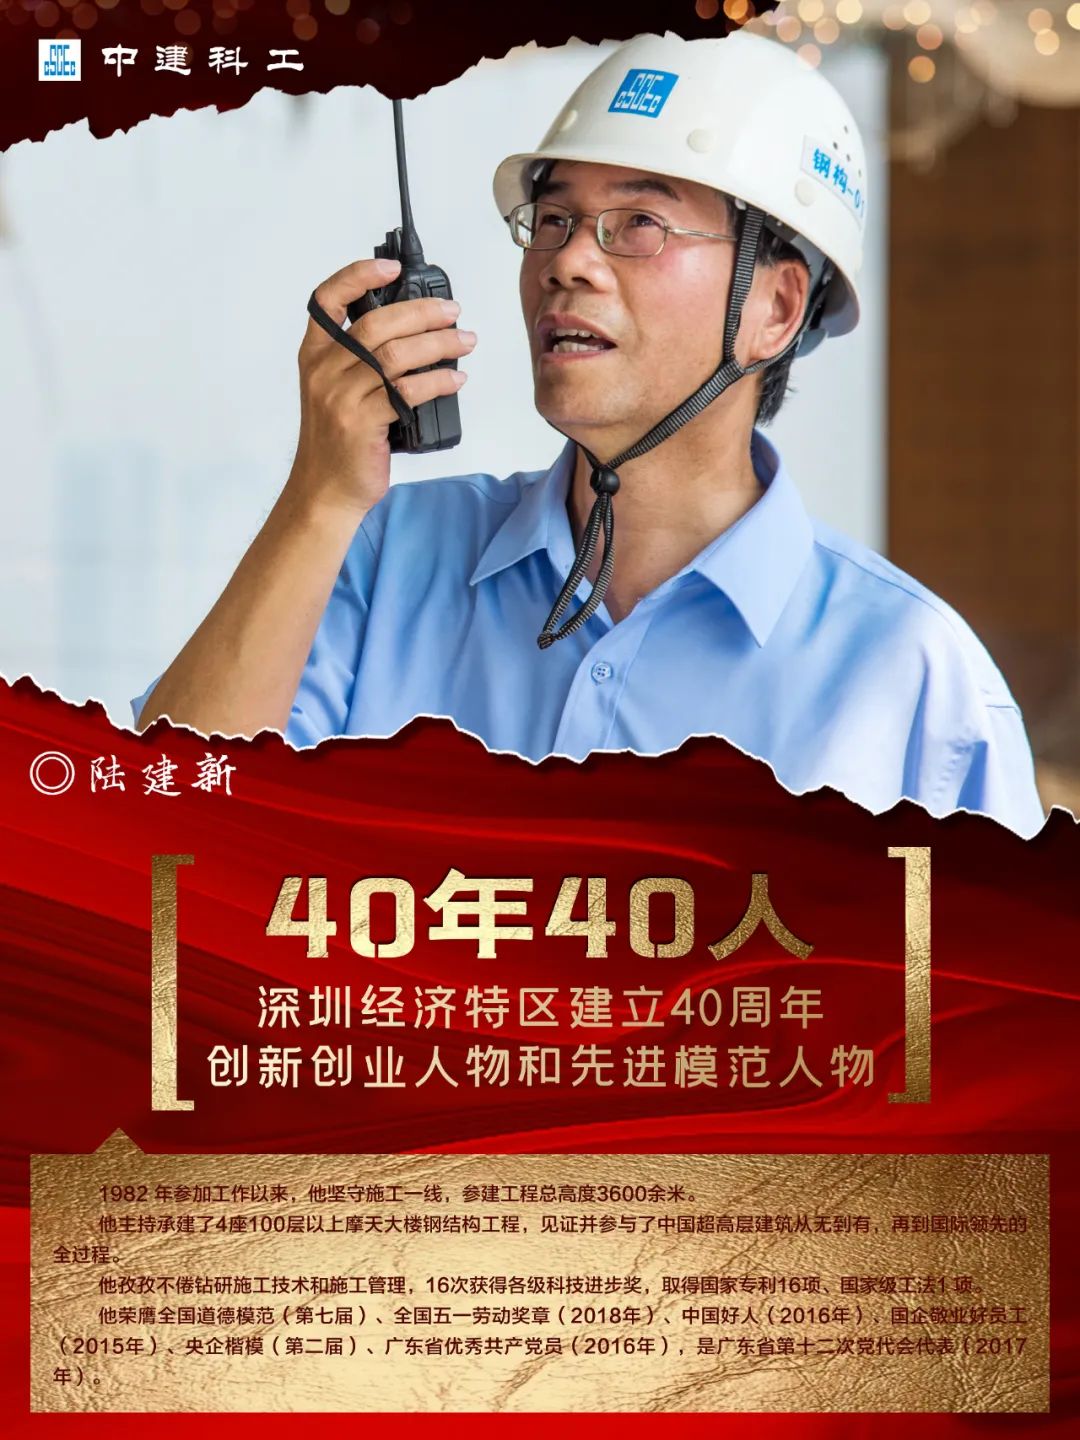 钢构人的骄傲，中建科工 陆建新 作为代表在深圳经济特区建立40周年庆祝大会发言：感谢党和时代成就每个平凡人的事业